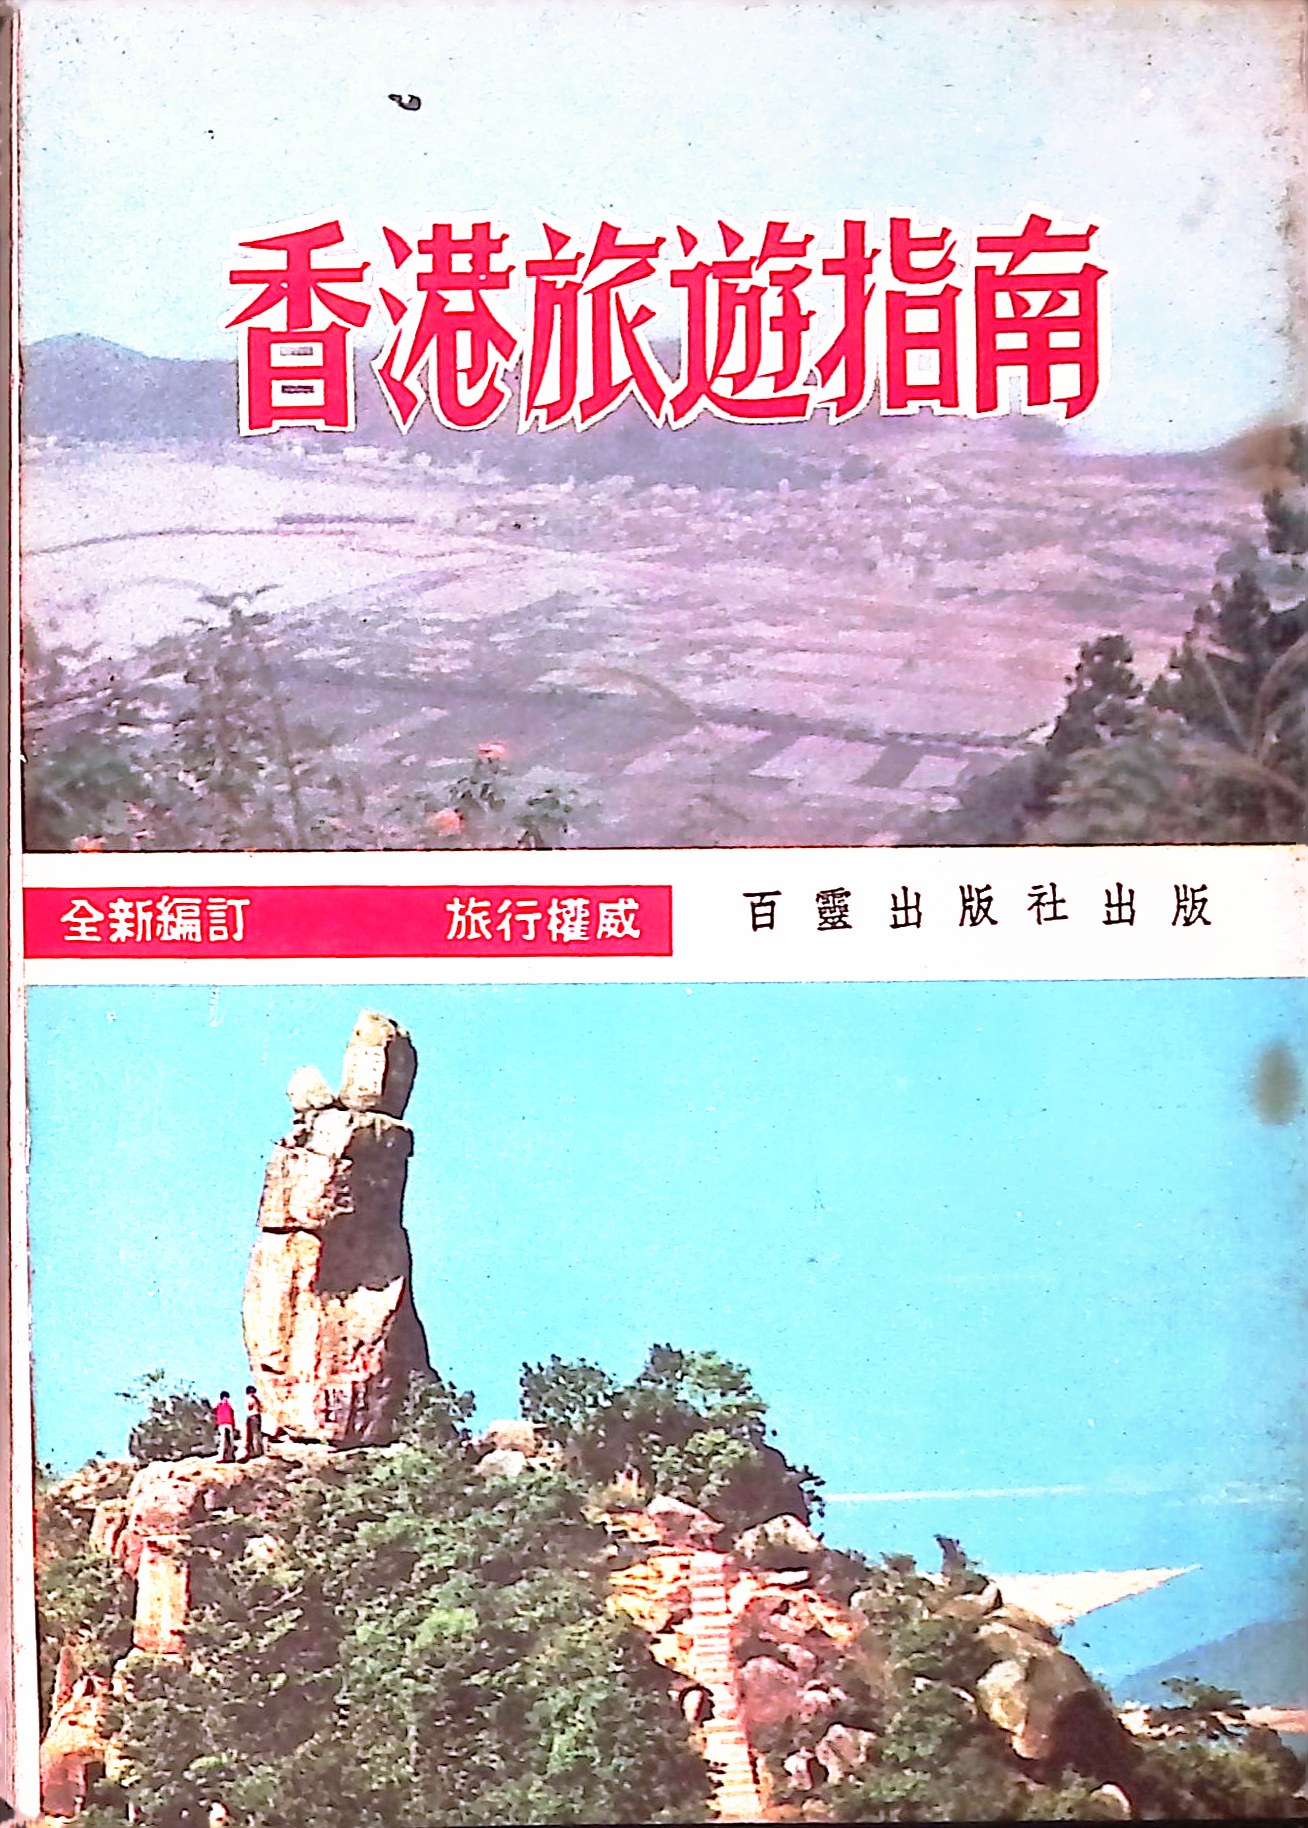 《香港旅遊指南》以「全新編訂，旅行權威」作招徠，約在1960年代末後出版，由江春華負責攝影香港各旅遊名勝。